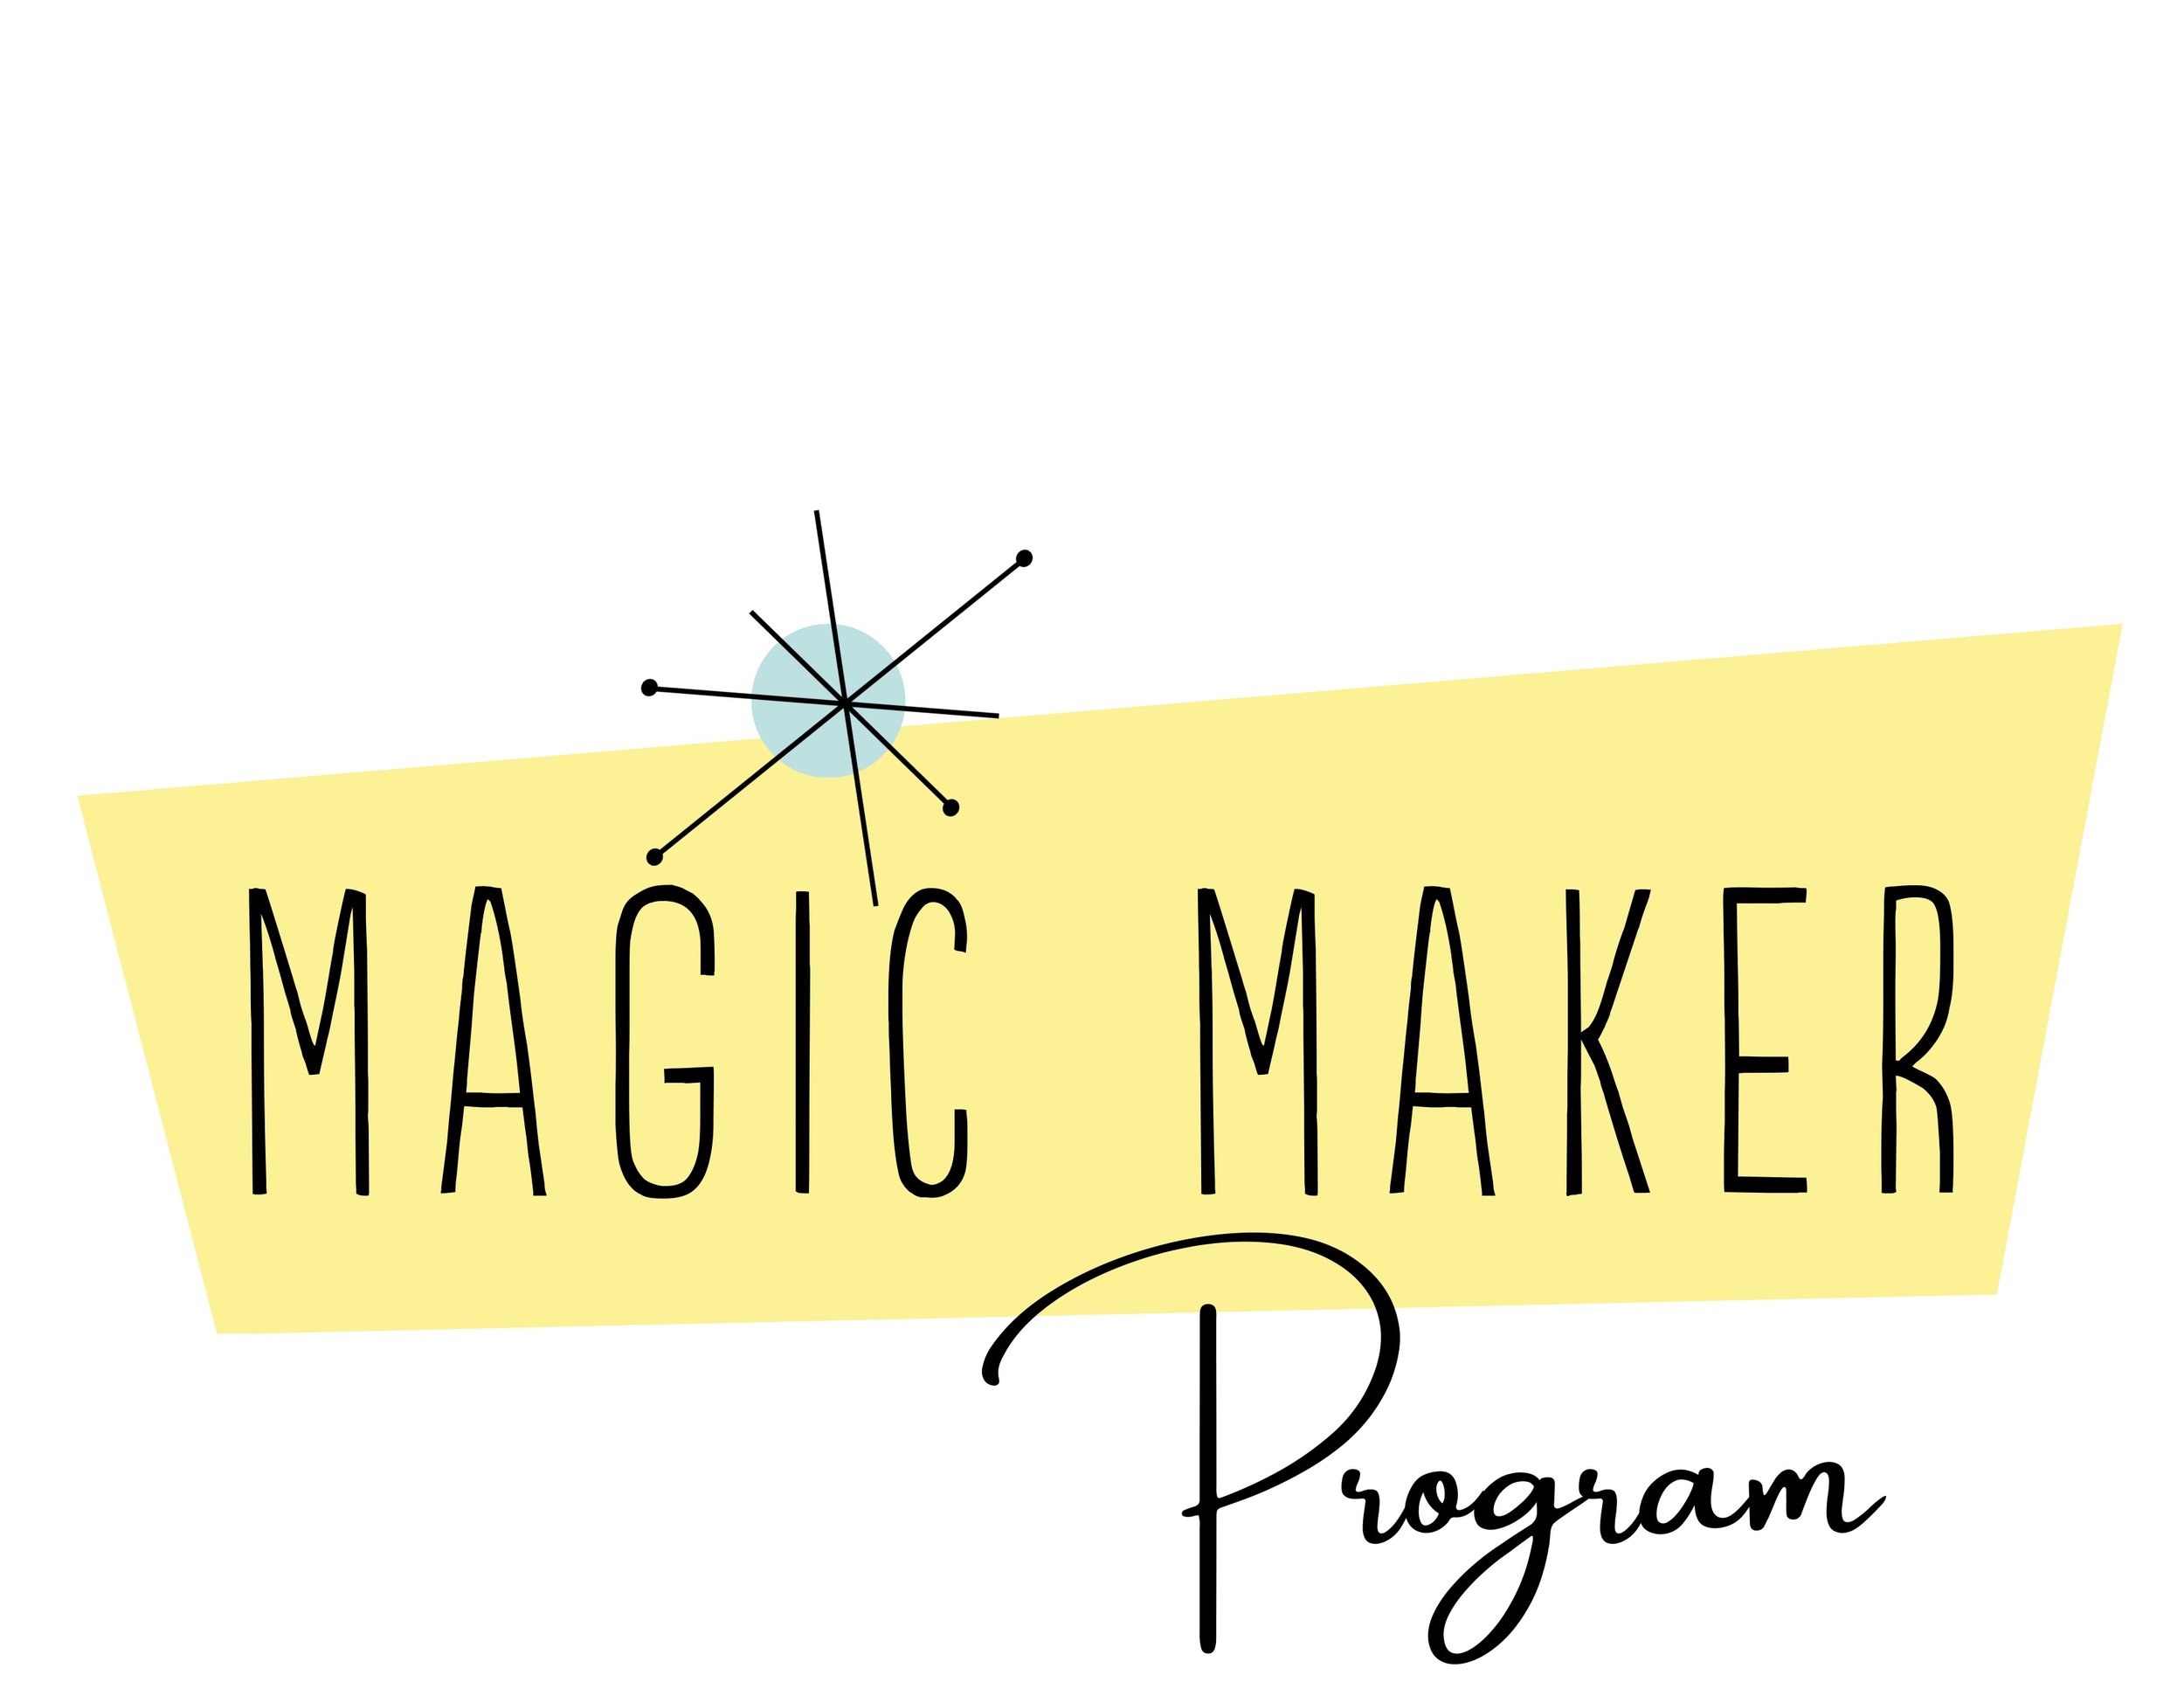 Magic Makers — Funding Love